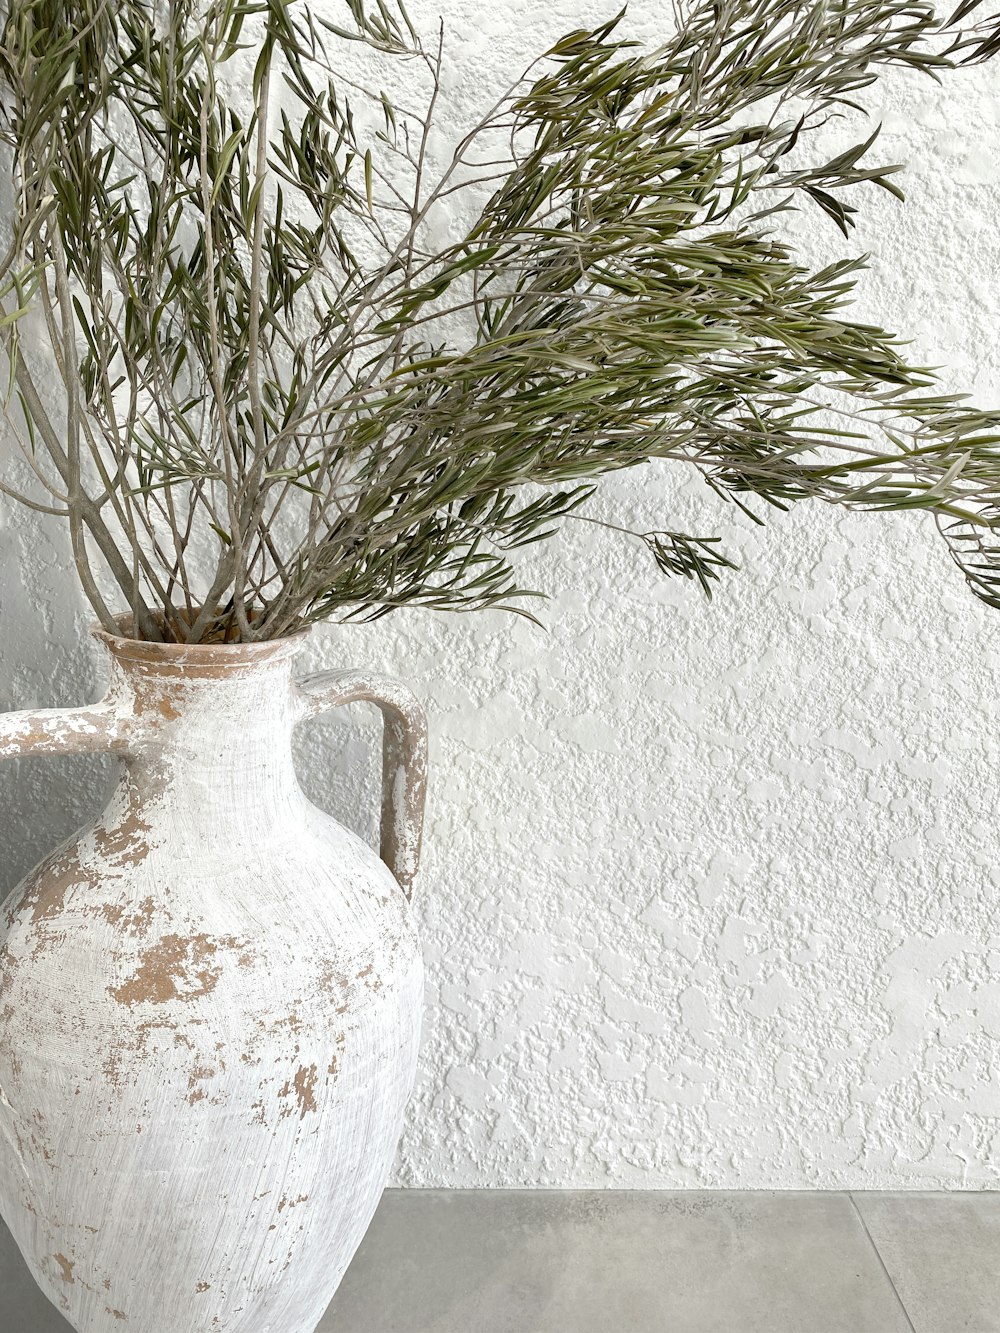 白い陶器の花瓶に緑の植物